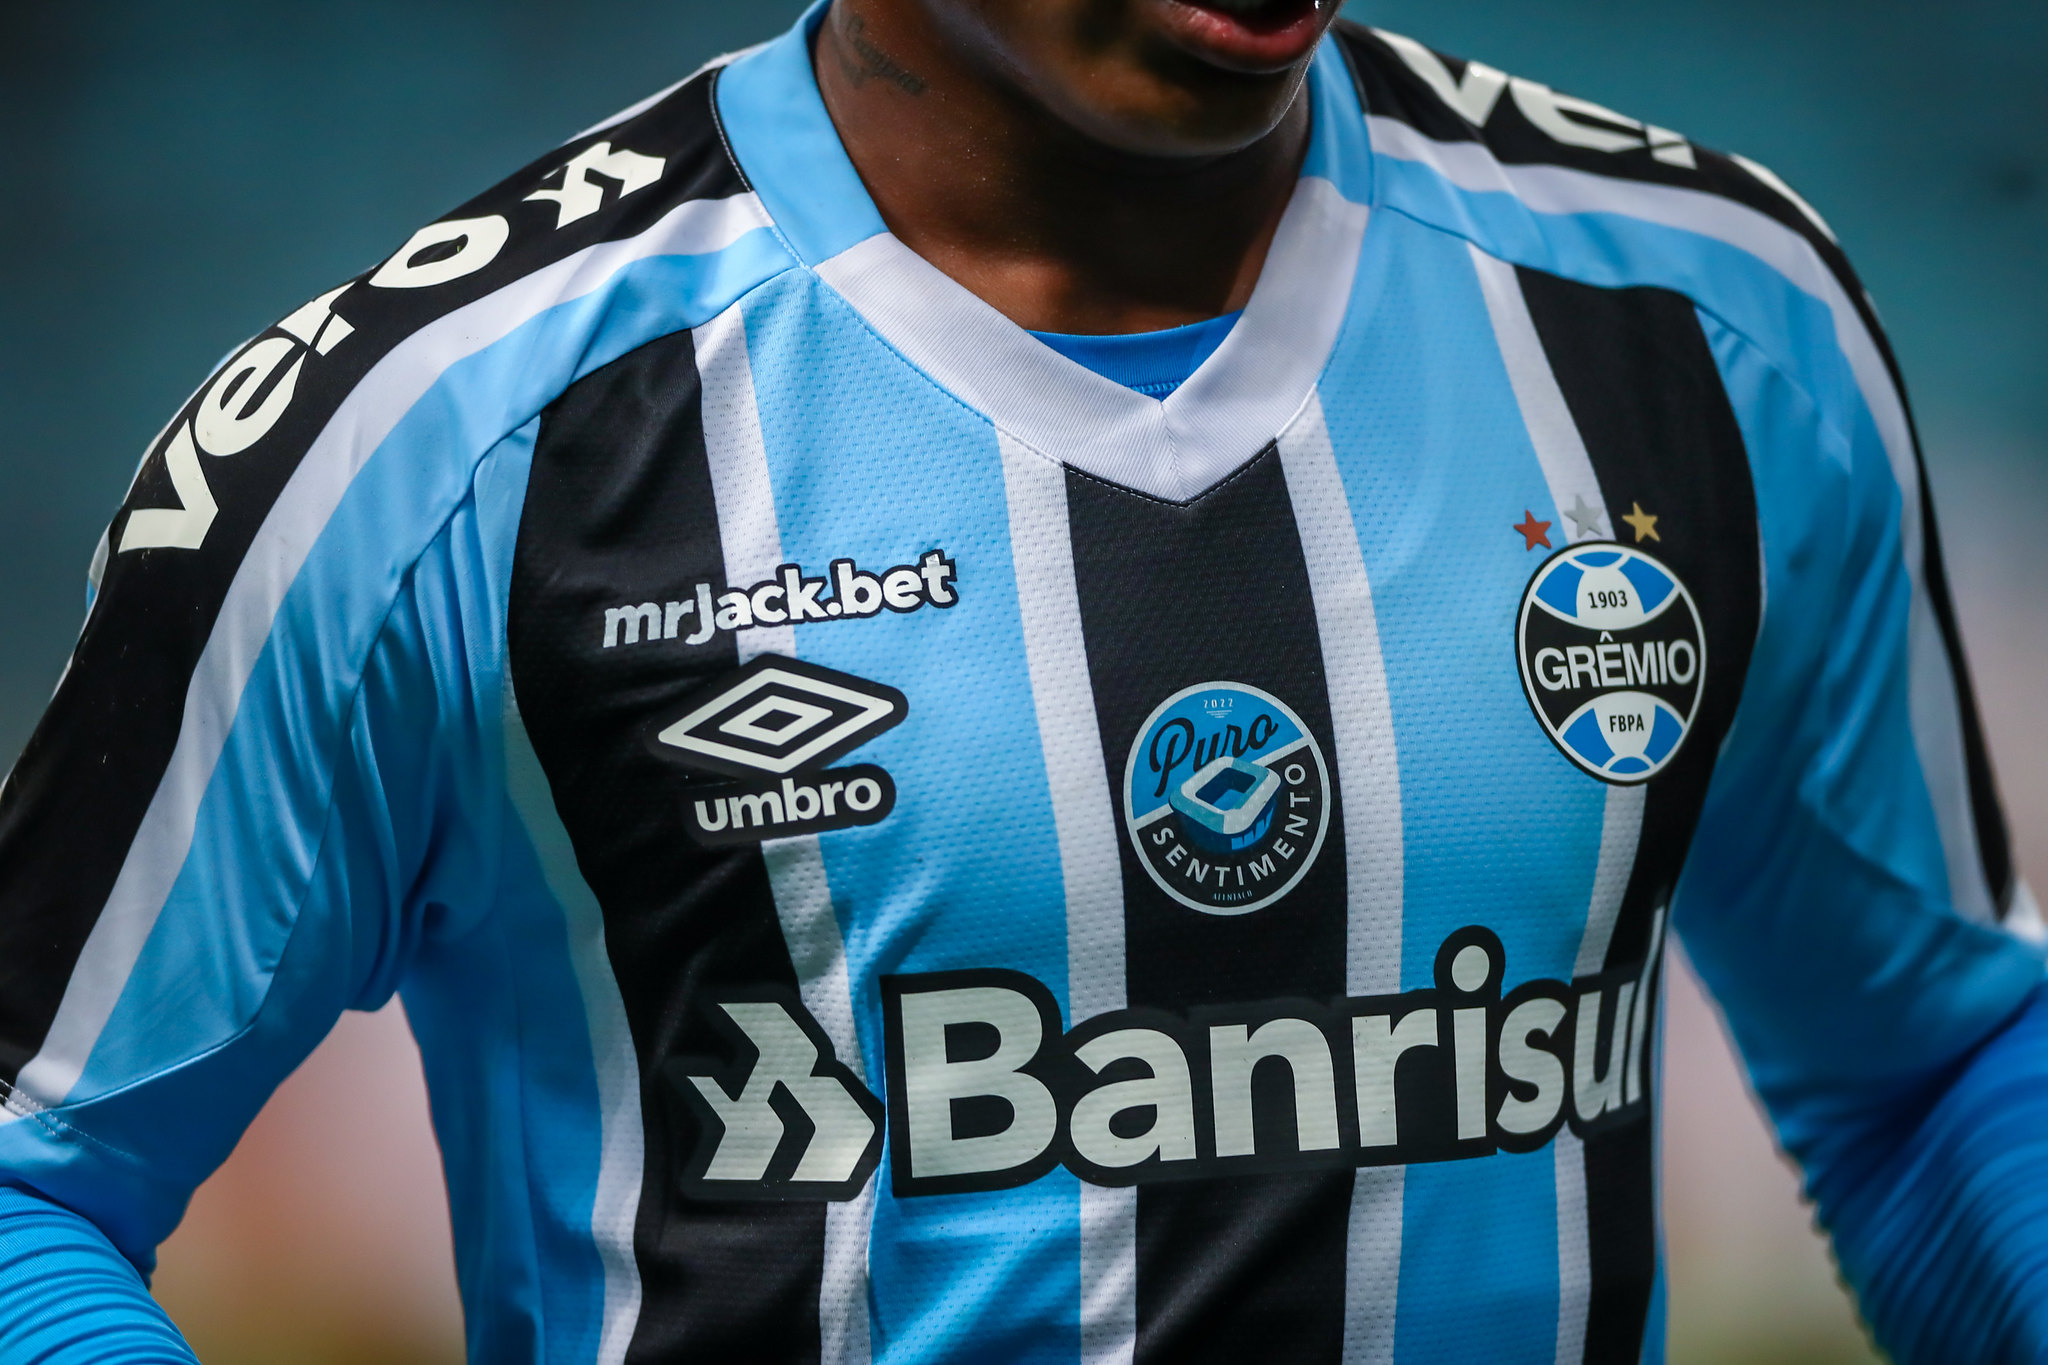 CBF comunica que clubes da Série B devem usar nas camisas patch